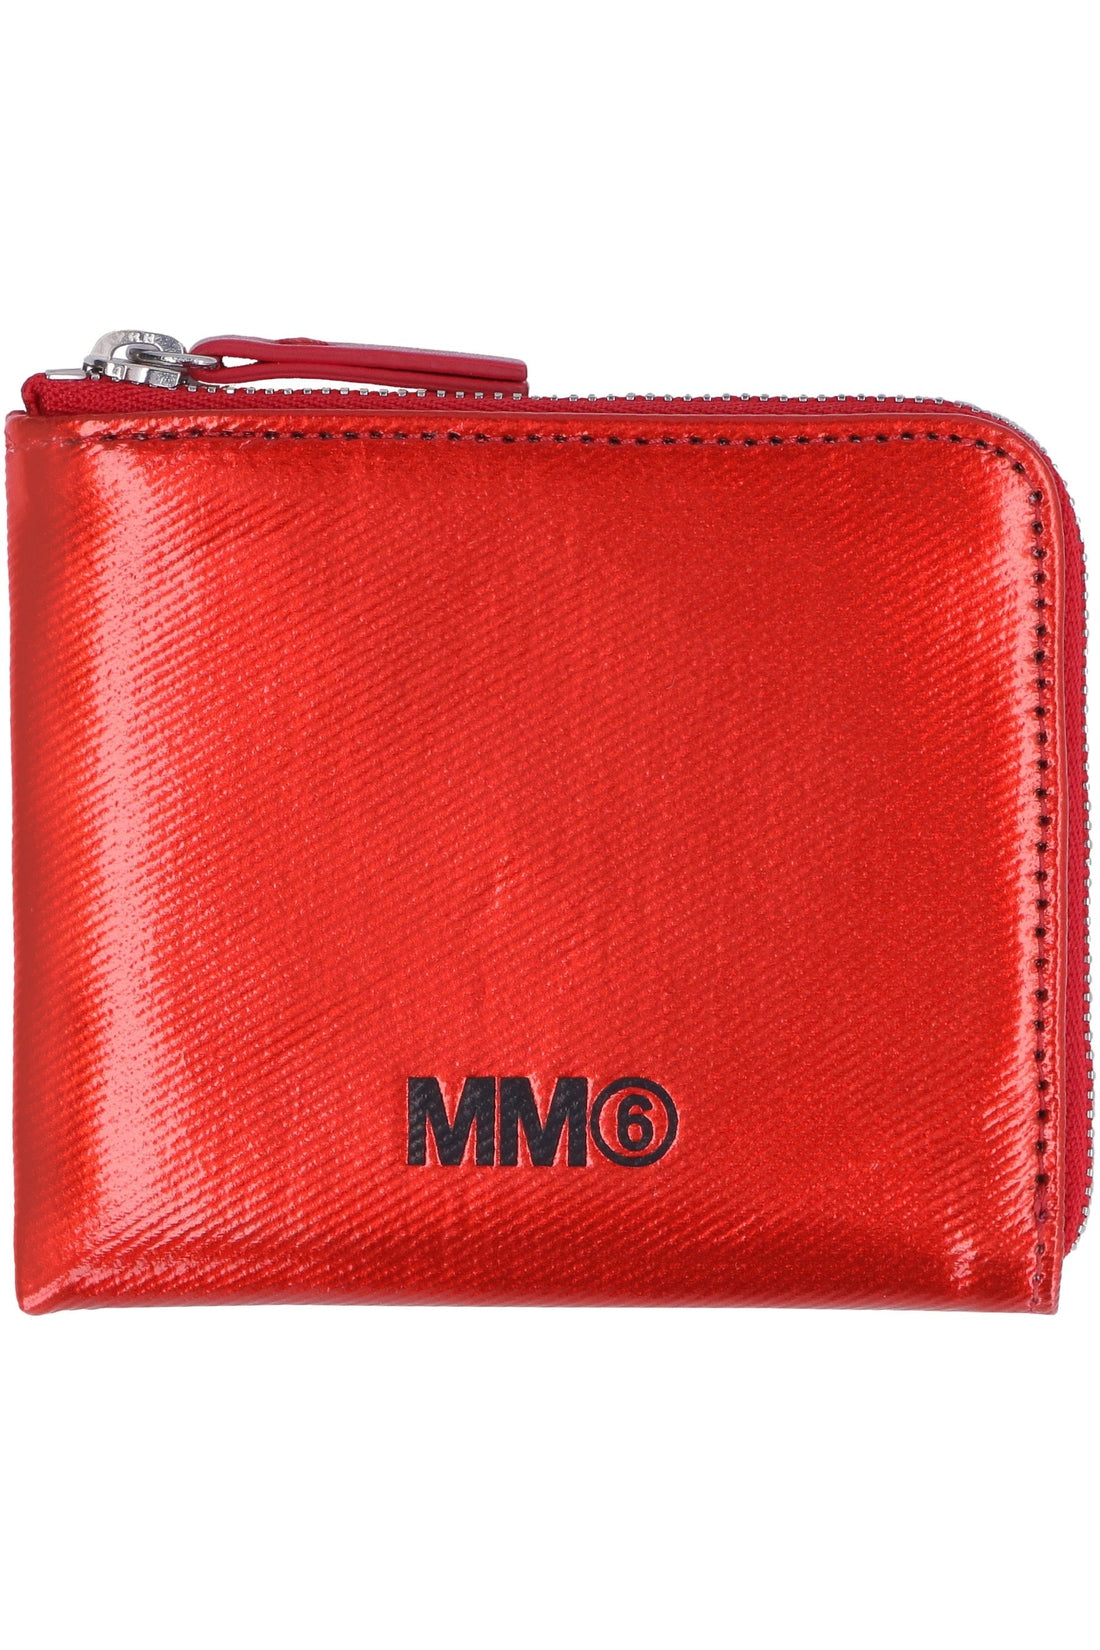 MM6 Maison Margiela-OUTLET-SALE-Faux leather wallet-ARCHIVIST